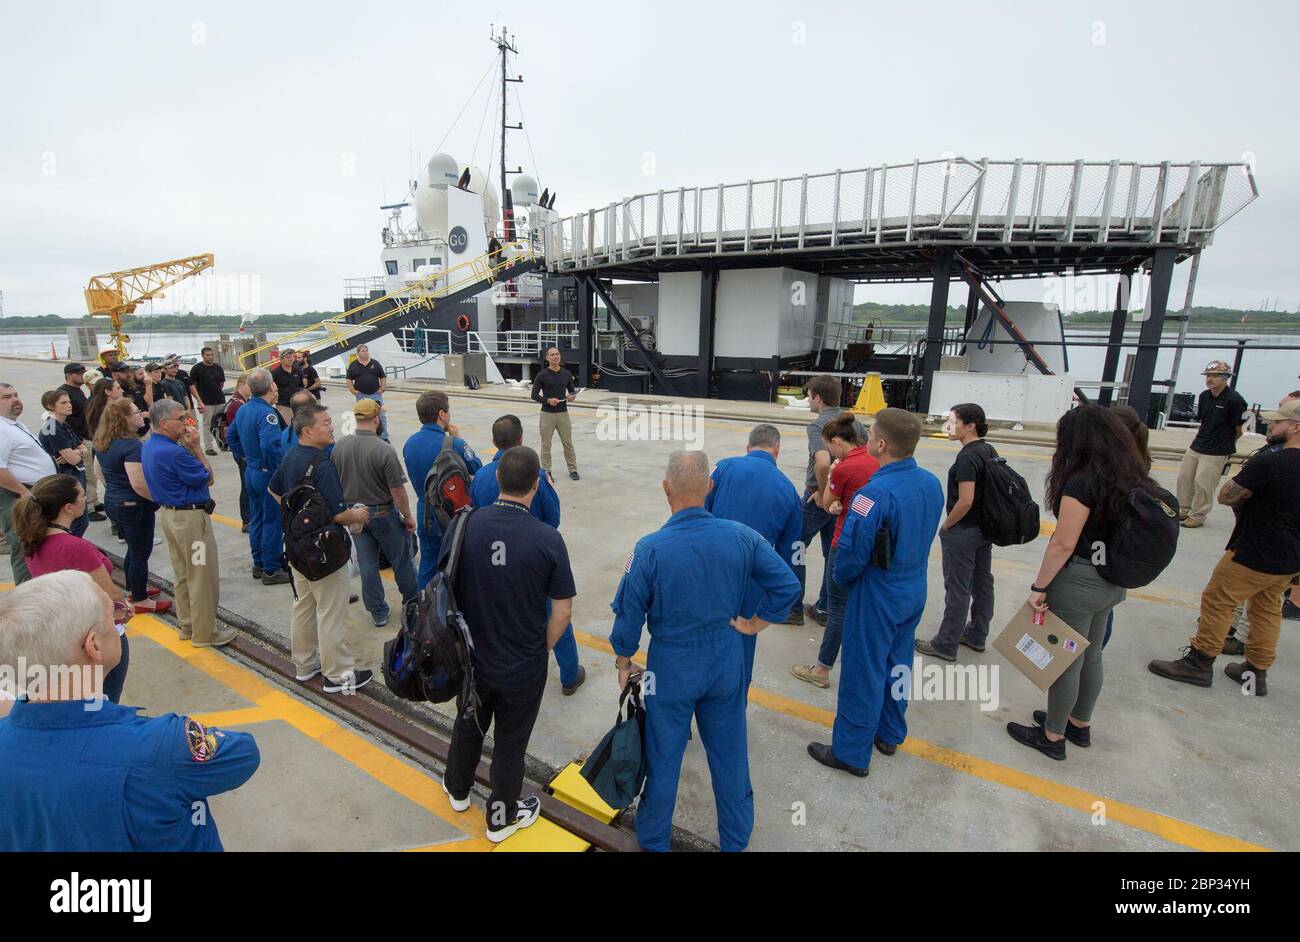 Extraction de l'équipage du Dragon SpaceX les équipes de répétition de la NASA et de SpaceX se rassemblent dans le bassin Trident de Cape Canaveral, en Floride, le 13 août 2019 pour répéter l'extraction des astronautes du Dragon de l'équipage du SpaceX, qui sera utilisé pour transporter des humains à la Station spatiale internationale. En utilisant le navire de recherche de Go SpaceX pour récupérer leur vaisseau spatial après splashdown et une maquette du Dragon d'équipage, les équipes ont travaillé à travers les étapes nécessaires pour faire sortir les astronautes de la NASA Doug Hurley et Bob Behnken du Dragon et de retour à la terre sèche. Hurley et Behnken se revoleront vers la station spatiale à bord du Crew Dragon Banque D'Images